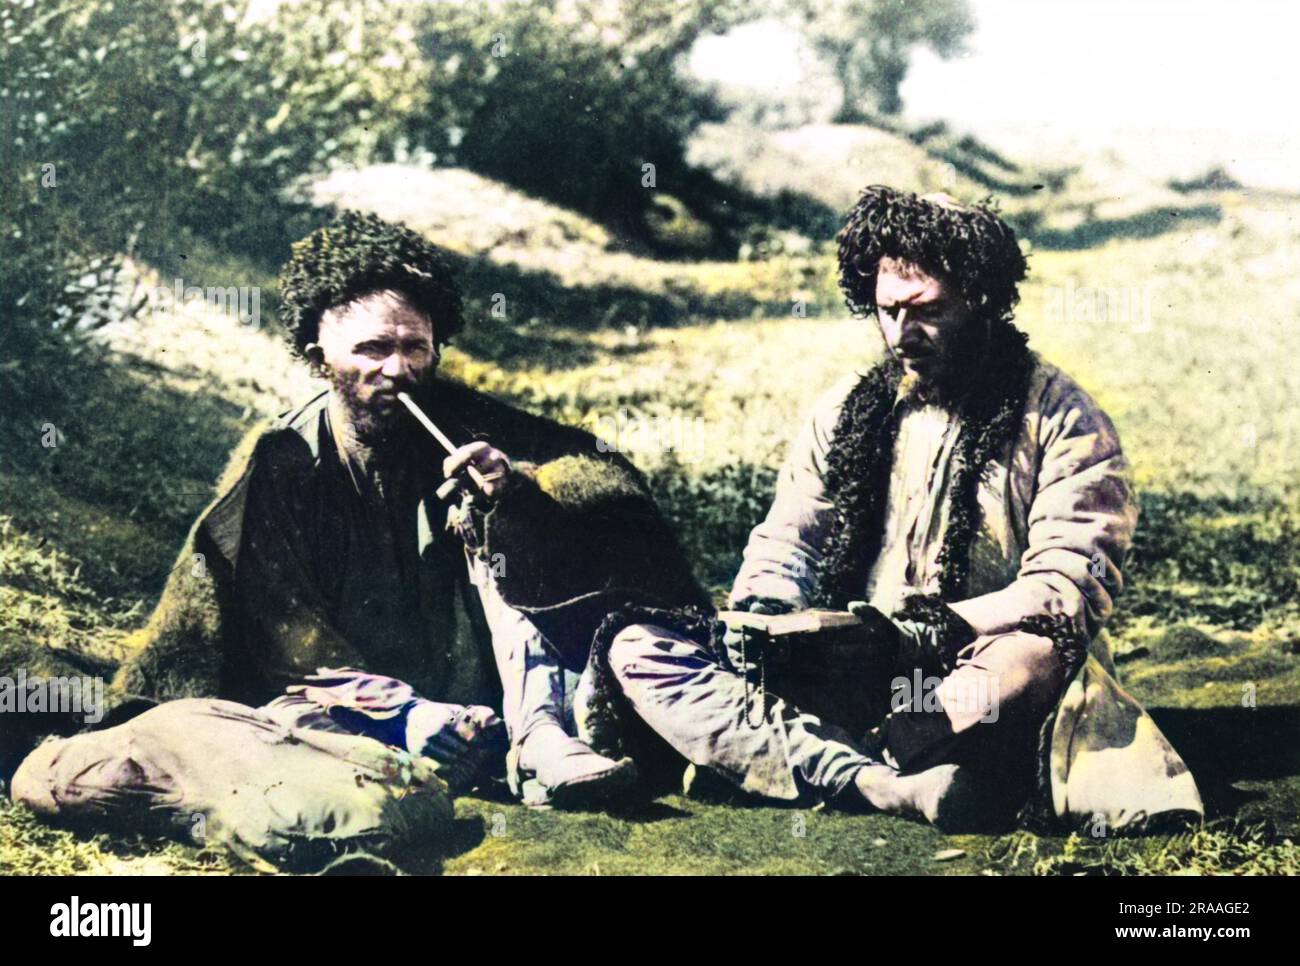 Zwei Mitglieder der kurdischen Miliz, die sich während des russisch-türkischen Krieges entspannten (24. April 1877 û 3. März 1878). Datum: Ca. 1877 Stockfoto